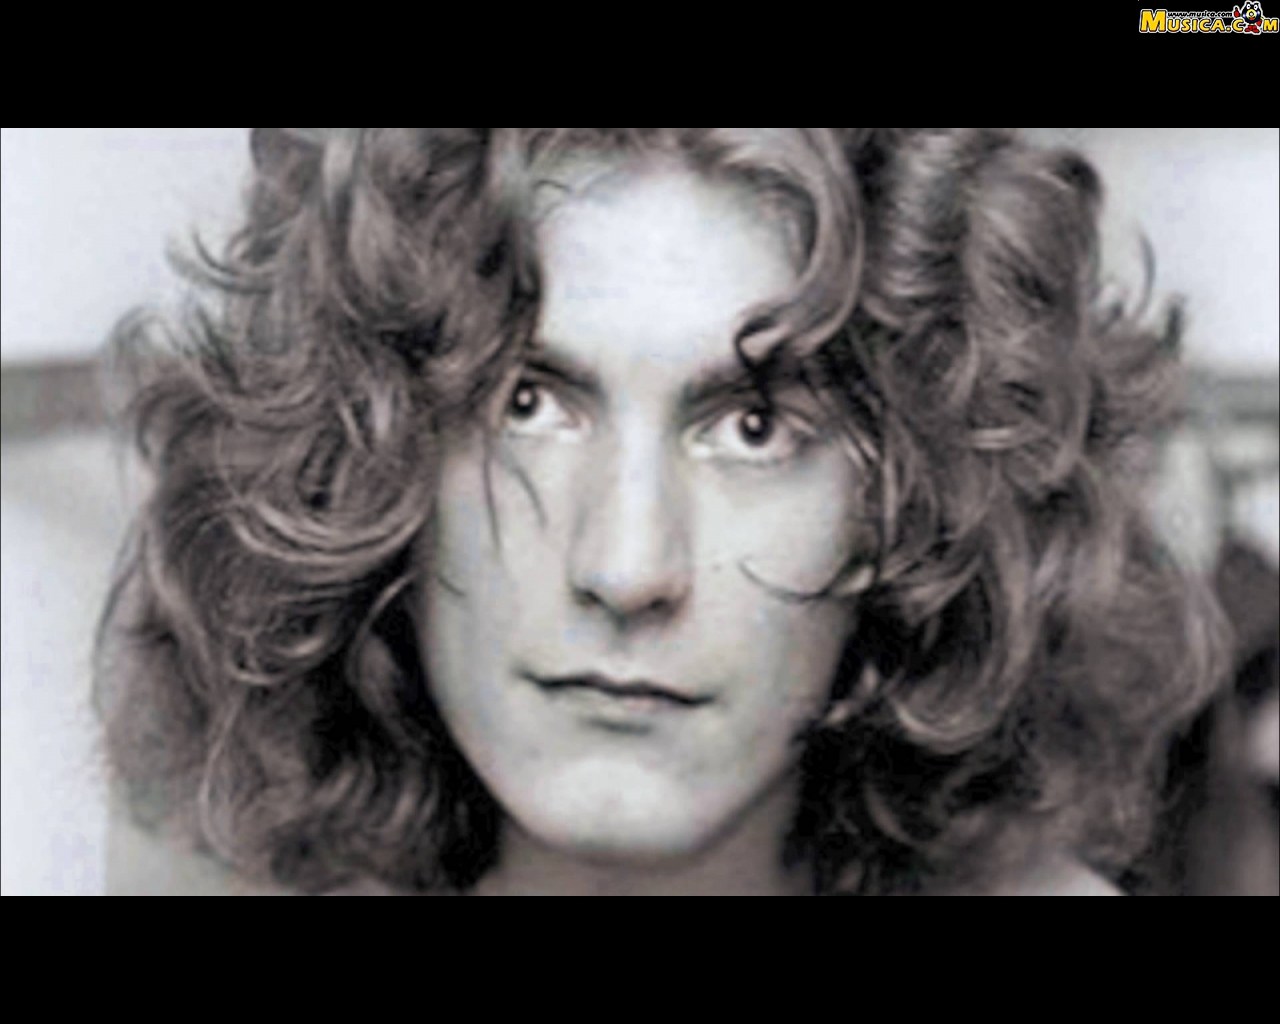 Fondo de pantalla de Robert Plant